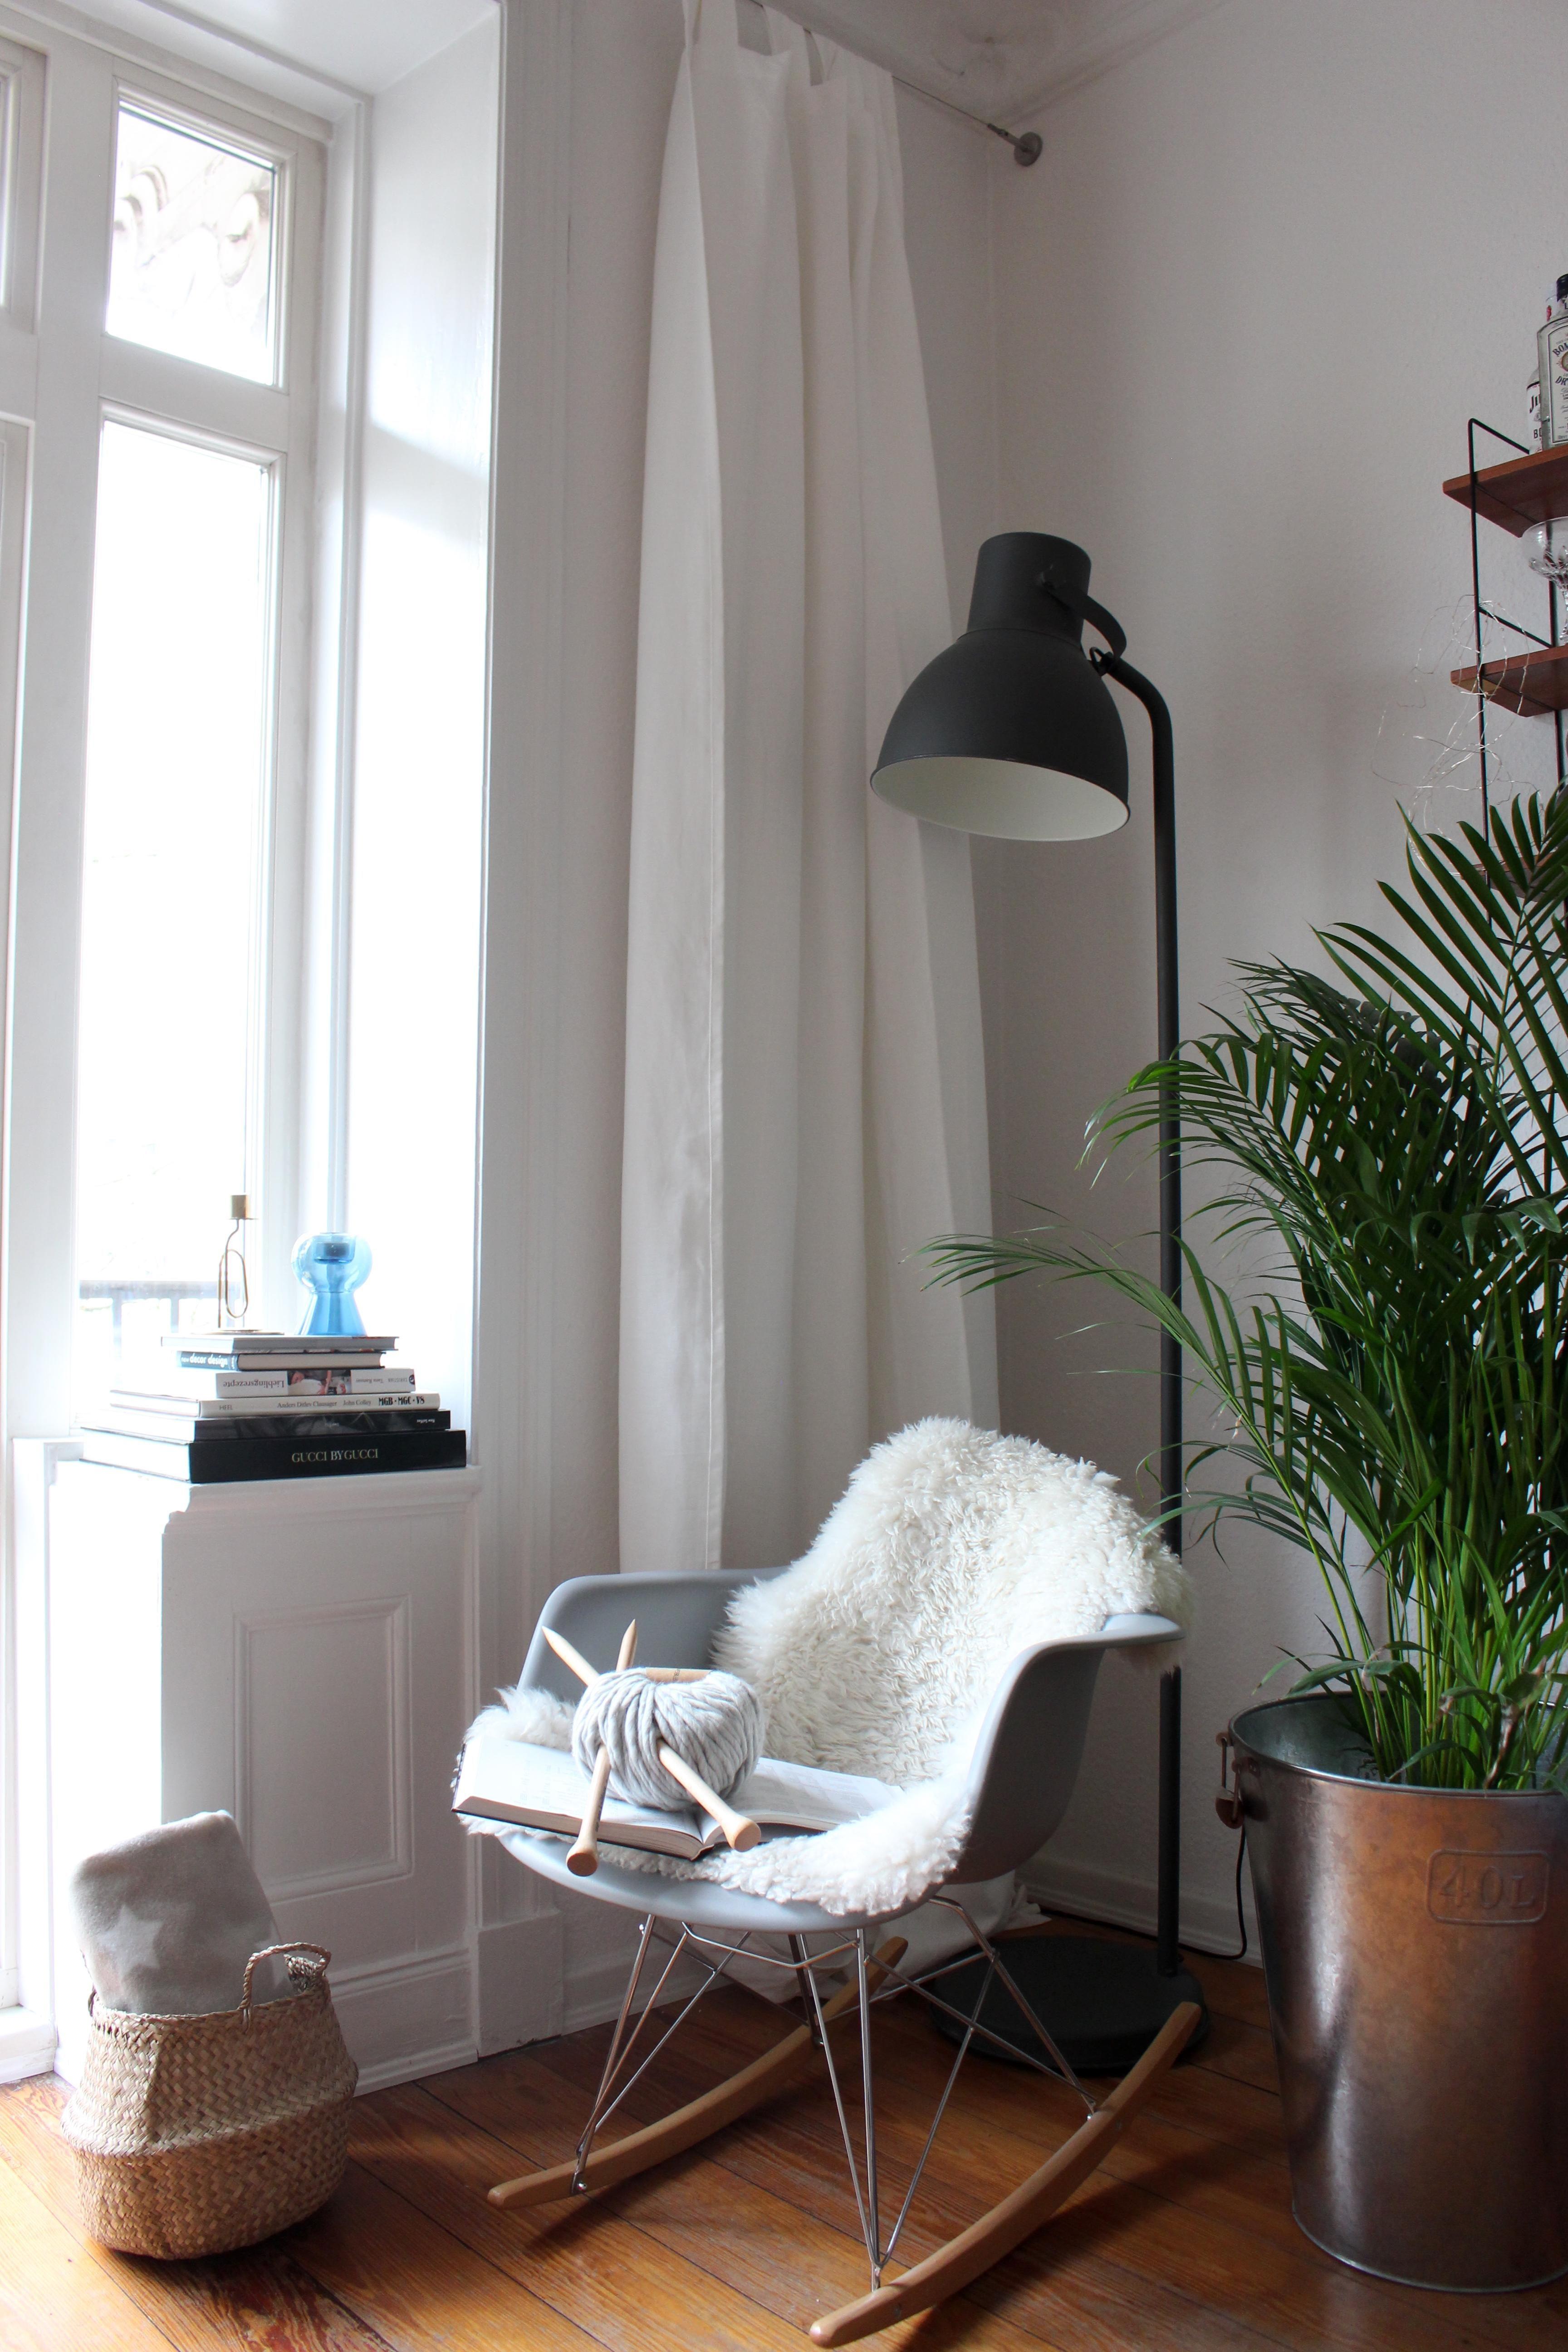 In diesem #Schaukelstuhl machen wir es uns liebend gerne bequem.☕️
#couchliebt #skandistyle #altbau #pflanzen #cozy 